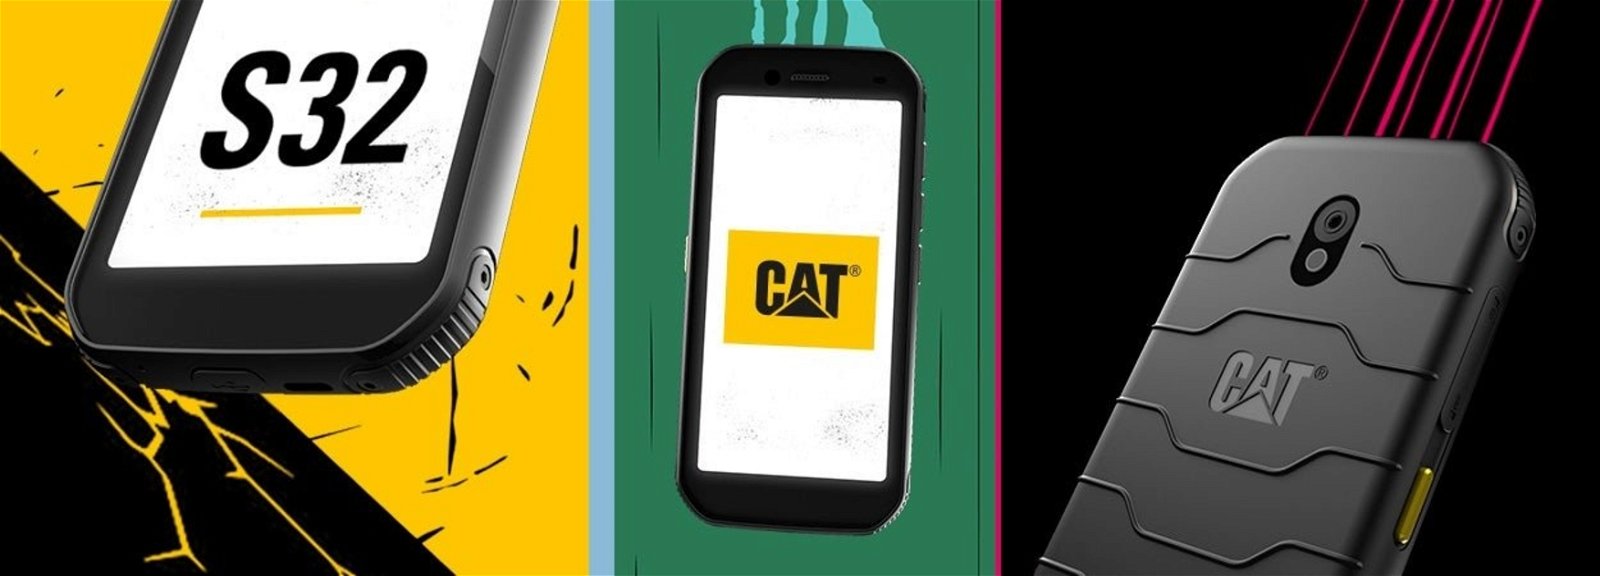 Cat S32: características, ficha técnica y precio del móvil todoterreno de Cat